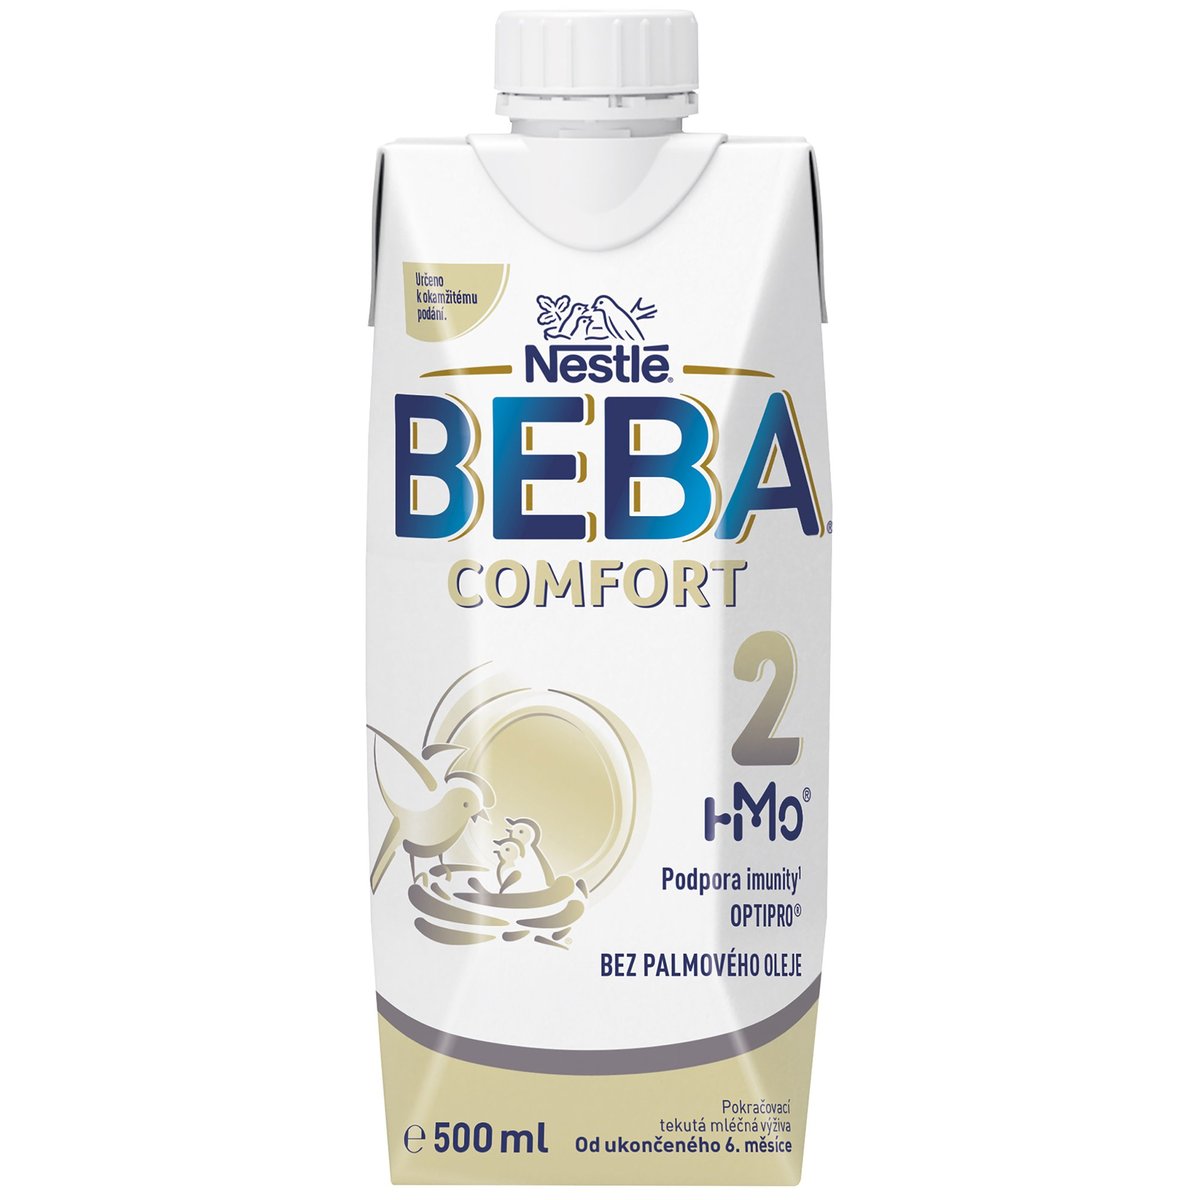 Beba Comfort 2 HM-O Pokračovací tekutá mléčná výživa